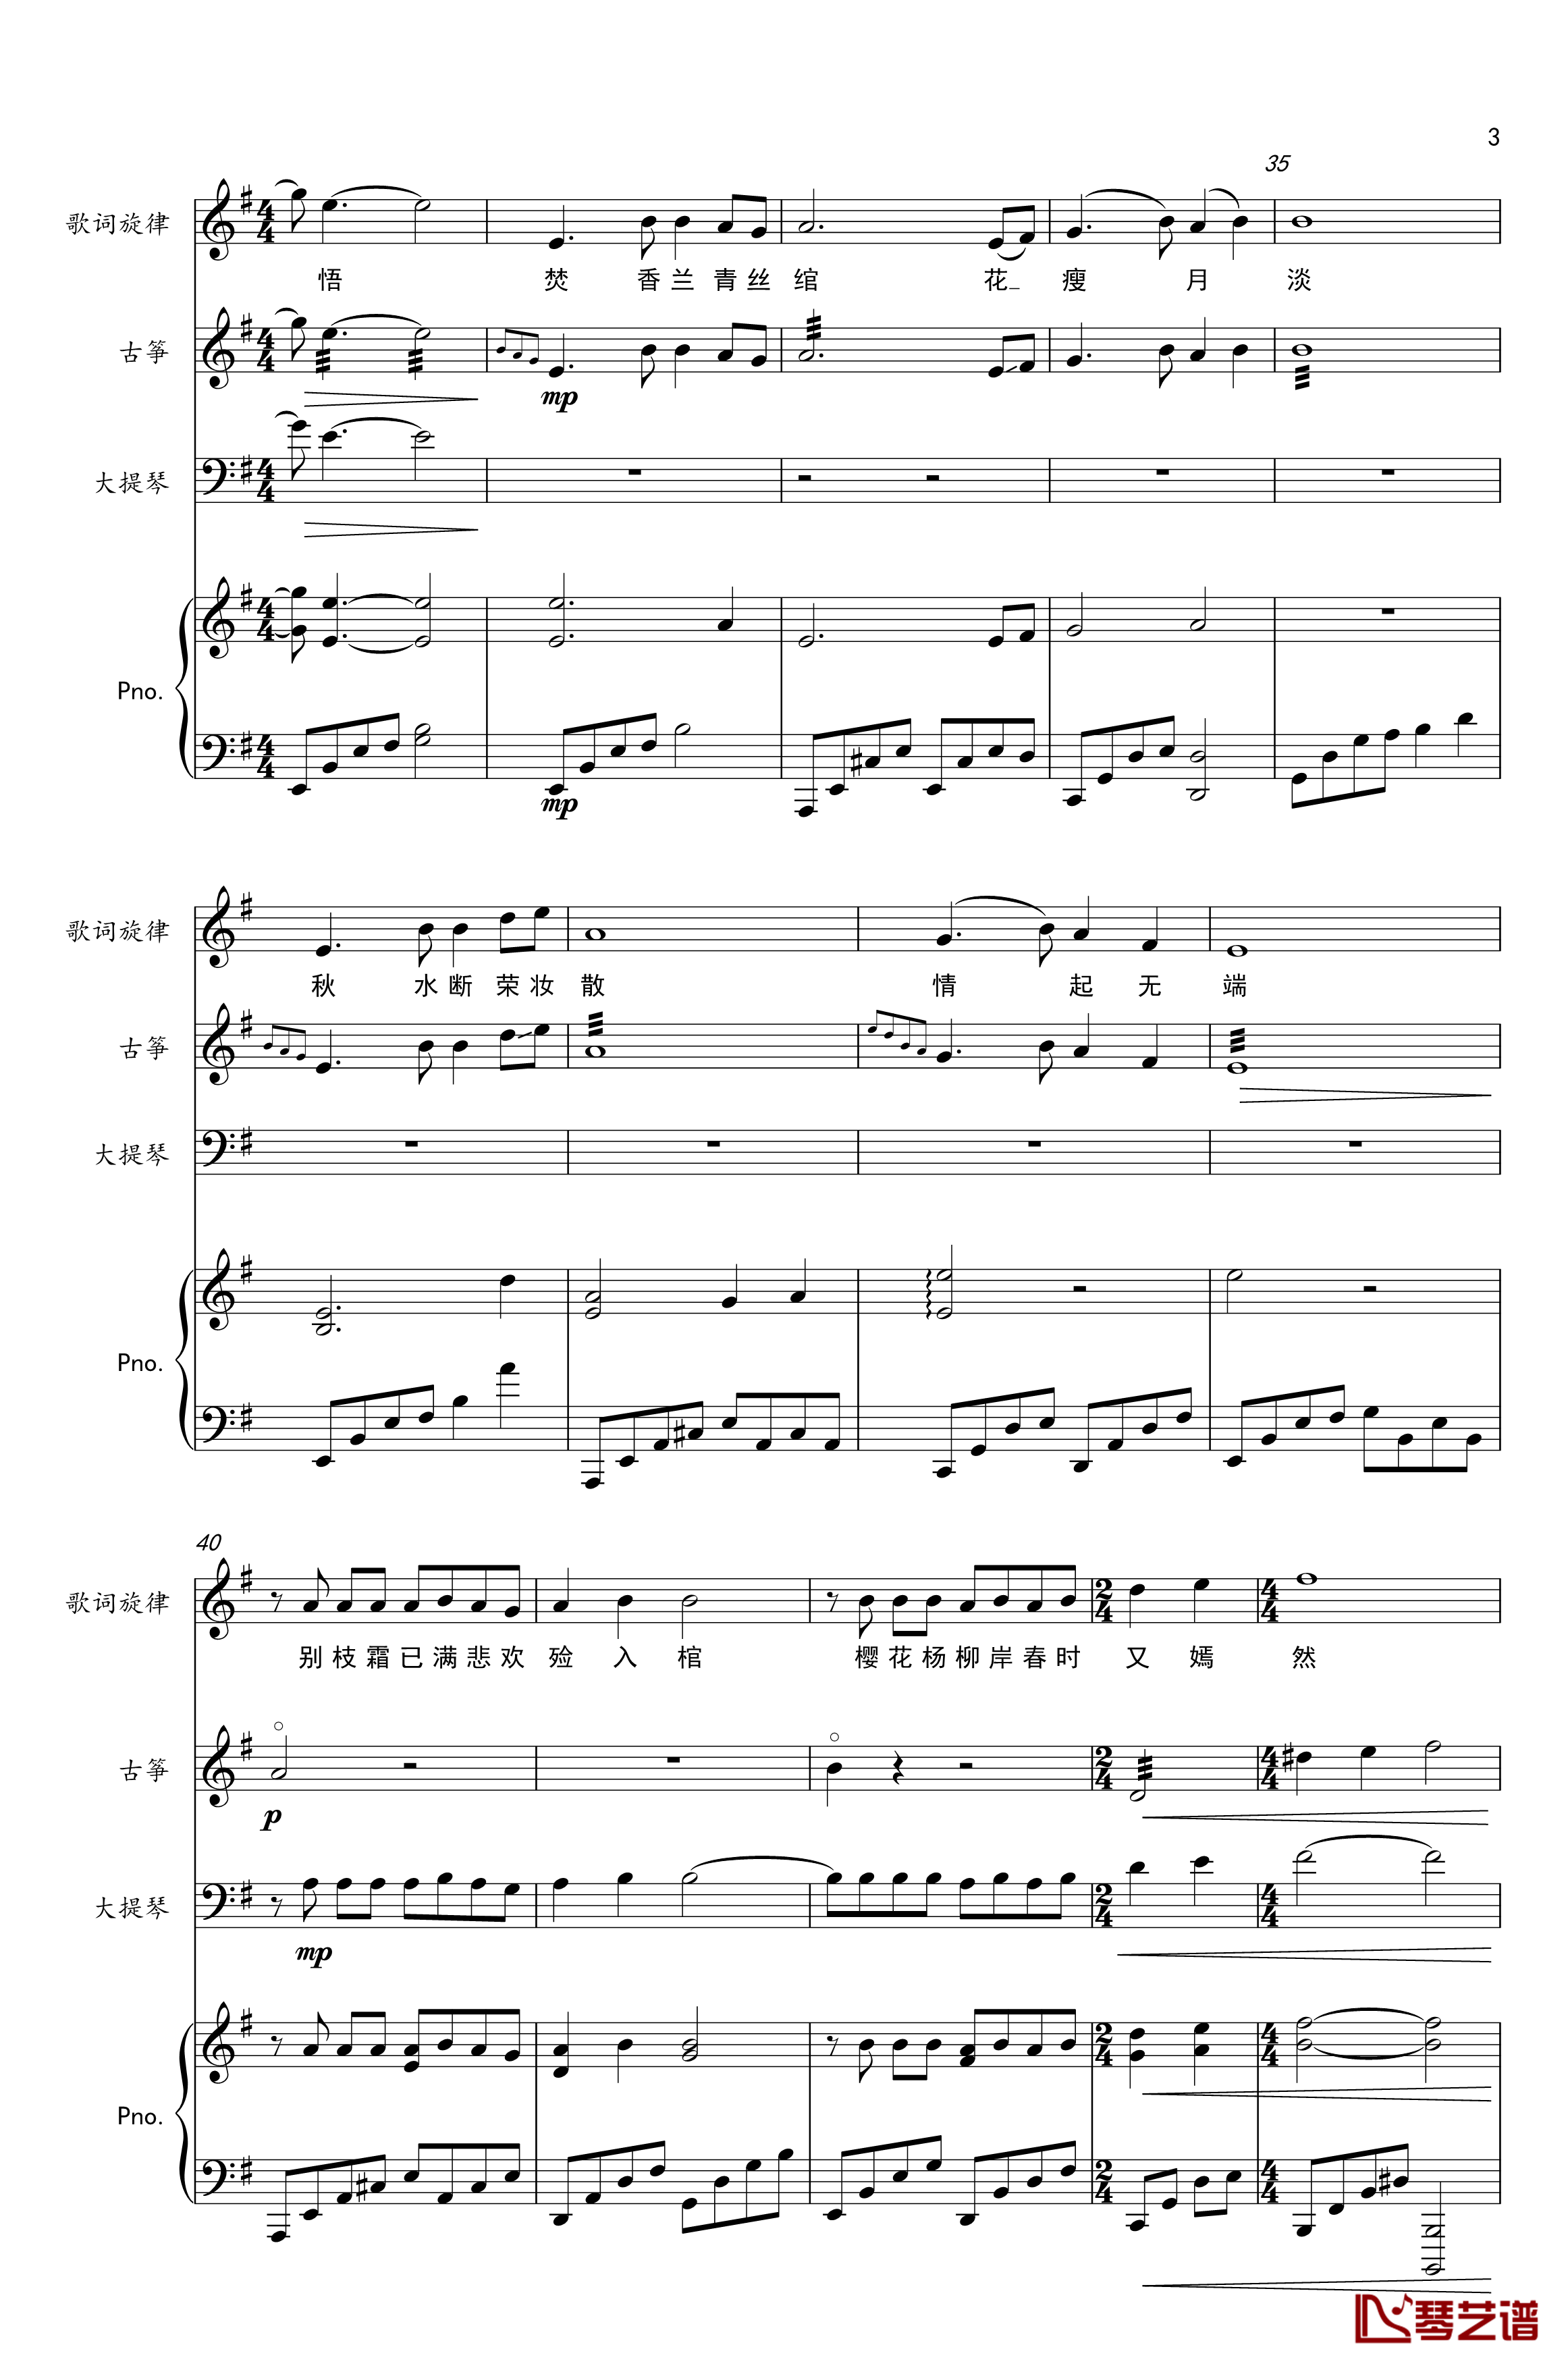 谓梦钢琴谱-古筝&大提琴&钢琴-樱の雪3